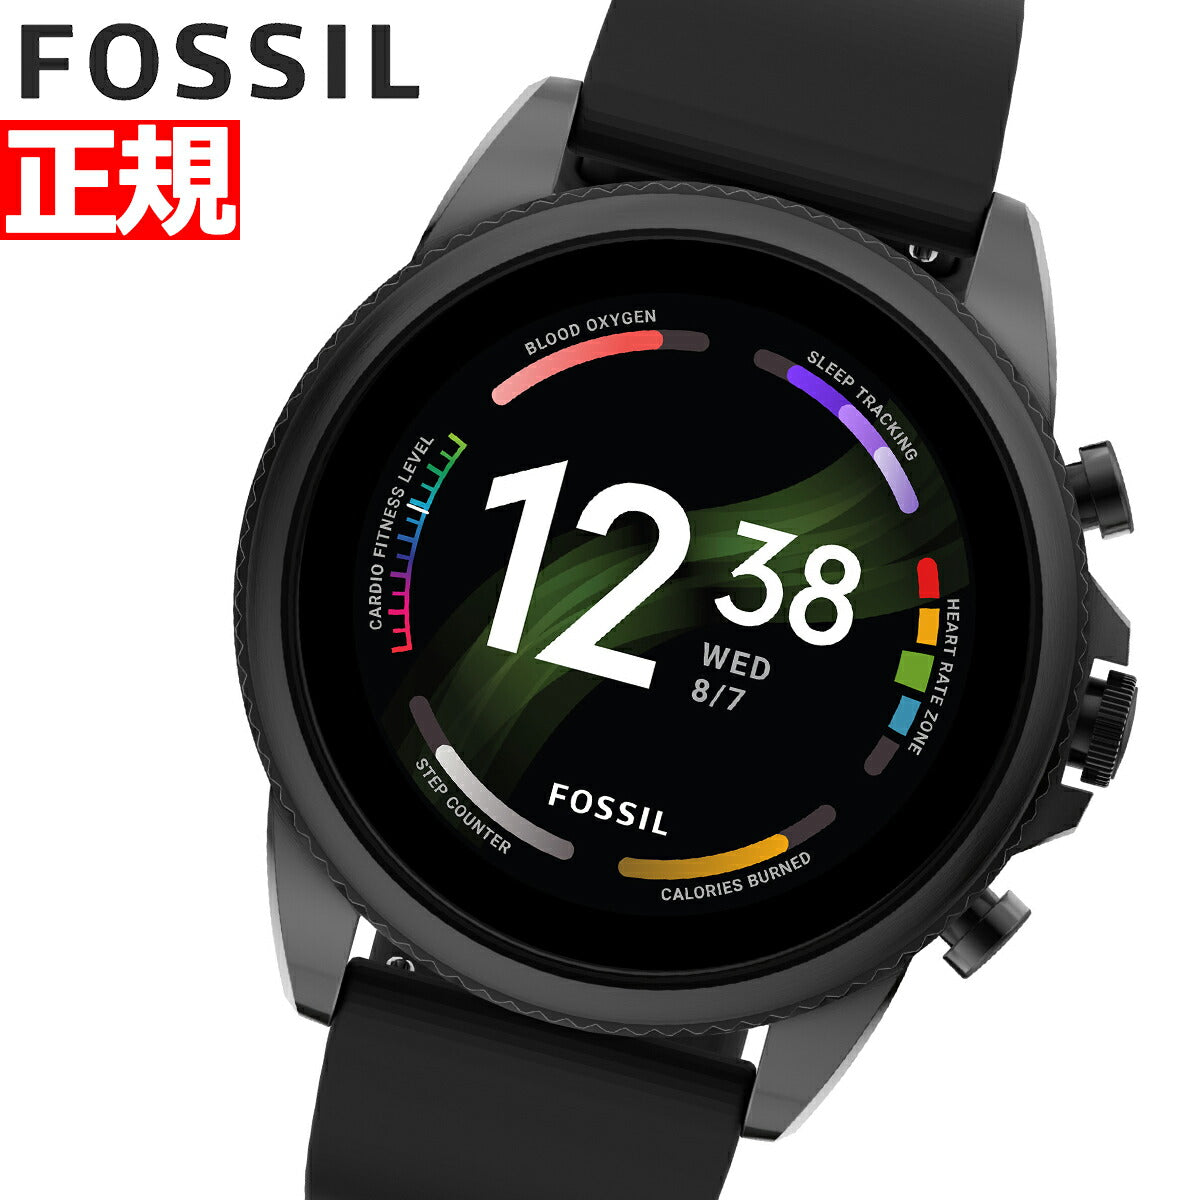 フォッシル FOSSIL スマートウォッチ 腕時計 メンズ ジェネレーション6 